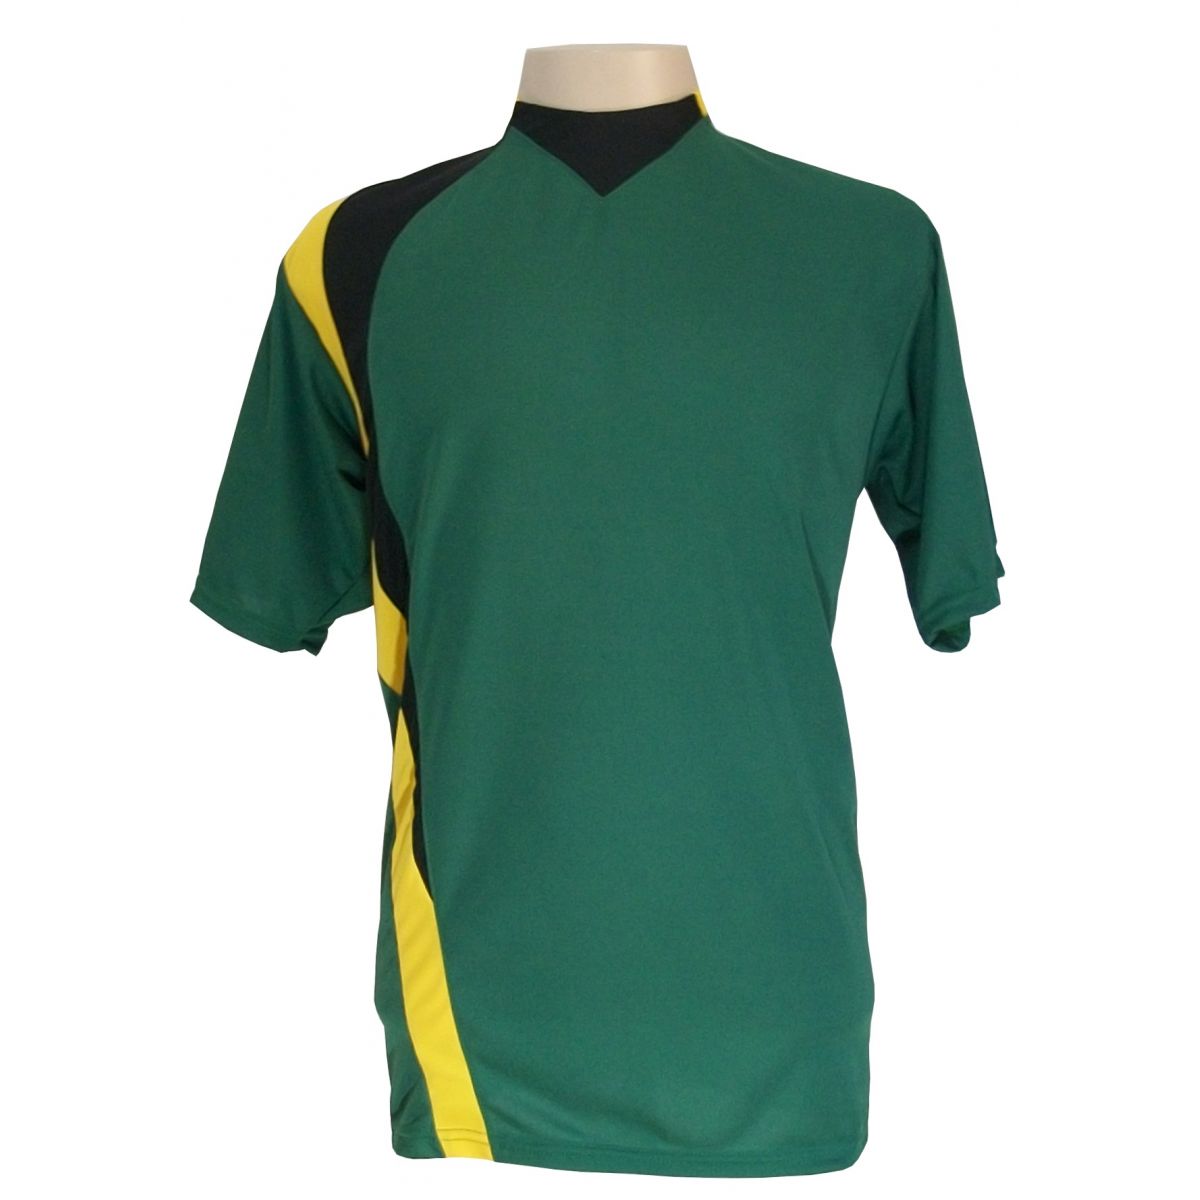 Uniforme Esportivo Completo modelo PSG 14+1 (14 camisas Verde/Preto/Amarelo + 14 calções Madrid Preto + 14 pares de meiões Pretos + 1 conjunto de goleiro) + Brindes